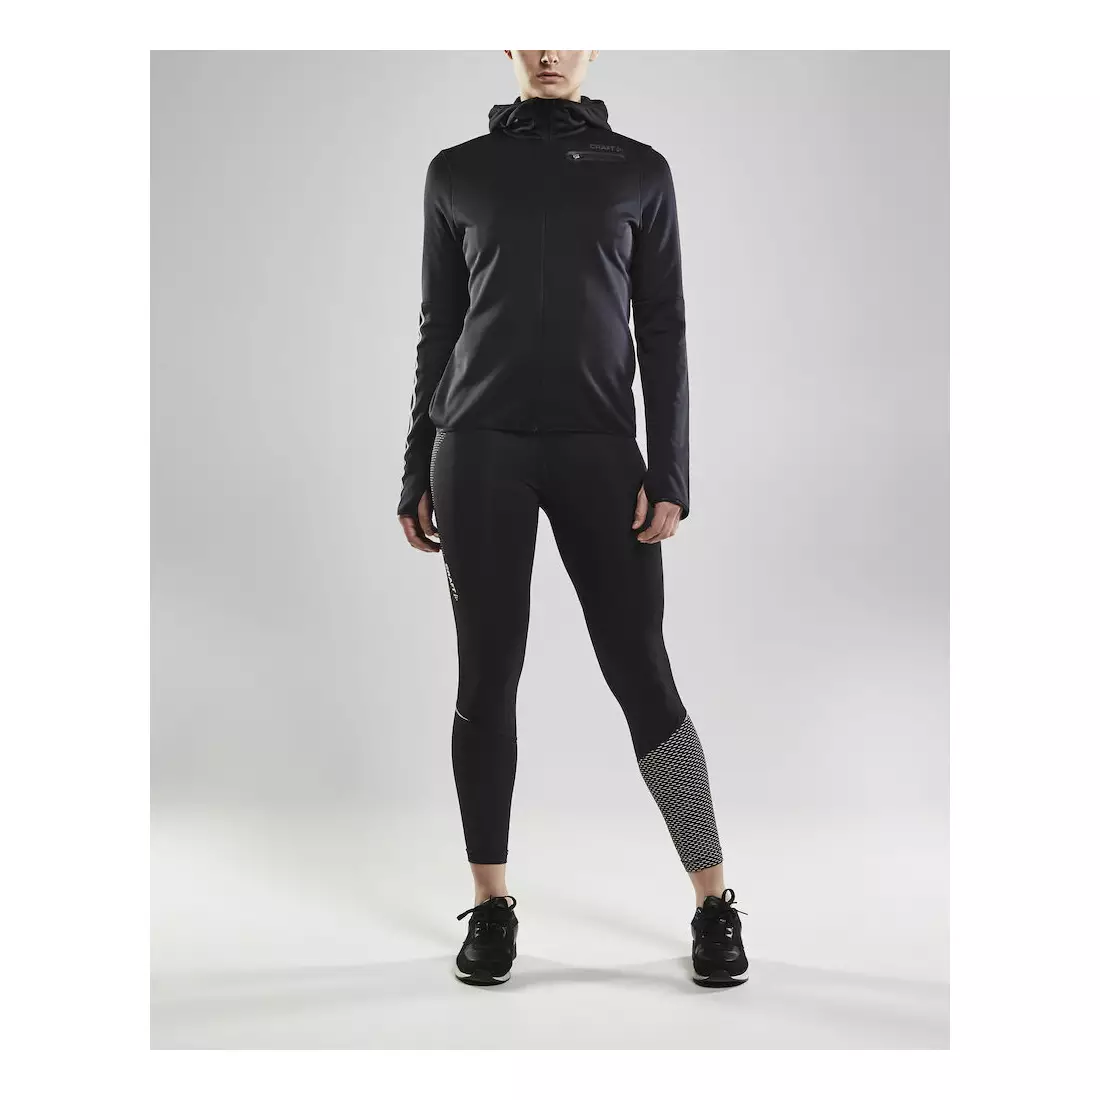 CRAFT EAZE warmes Sport-Sweatshirt für Damen mit Kapuze, schwarz 1906033-999000